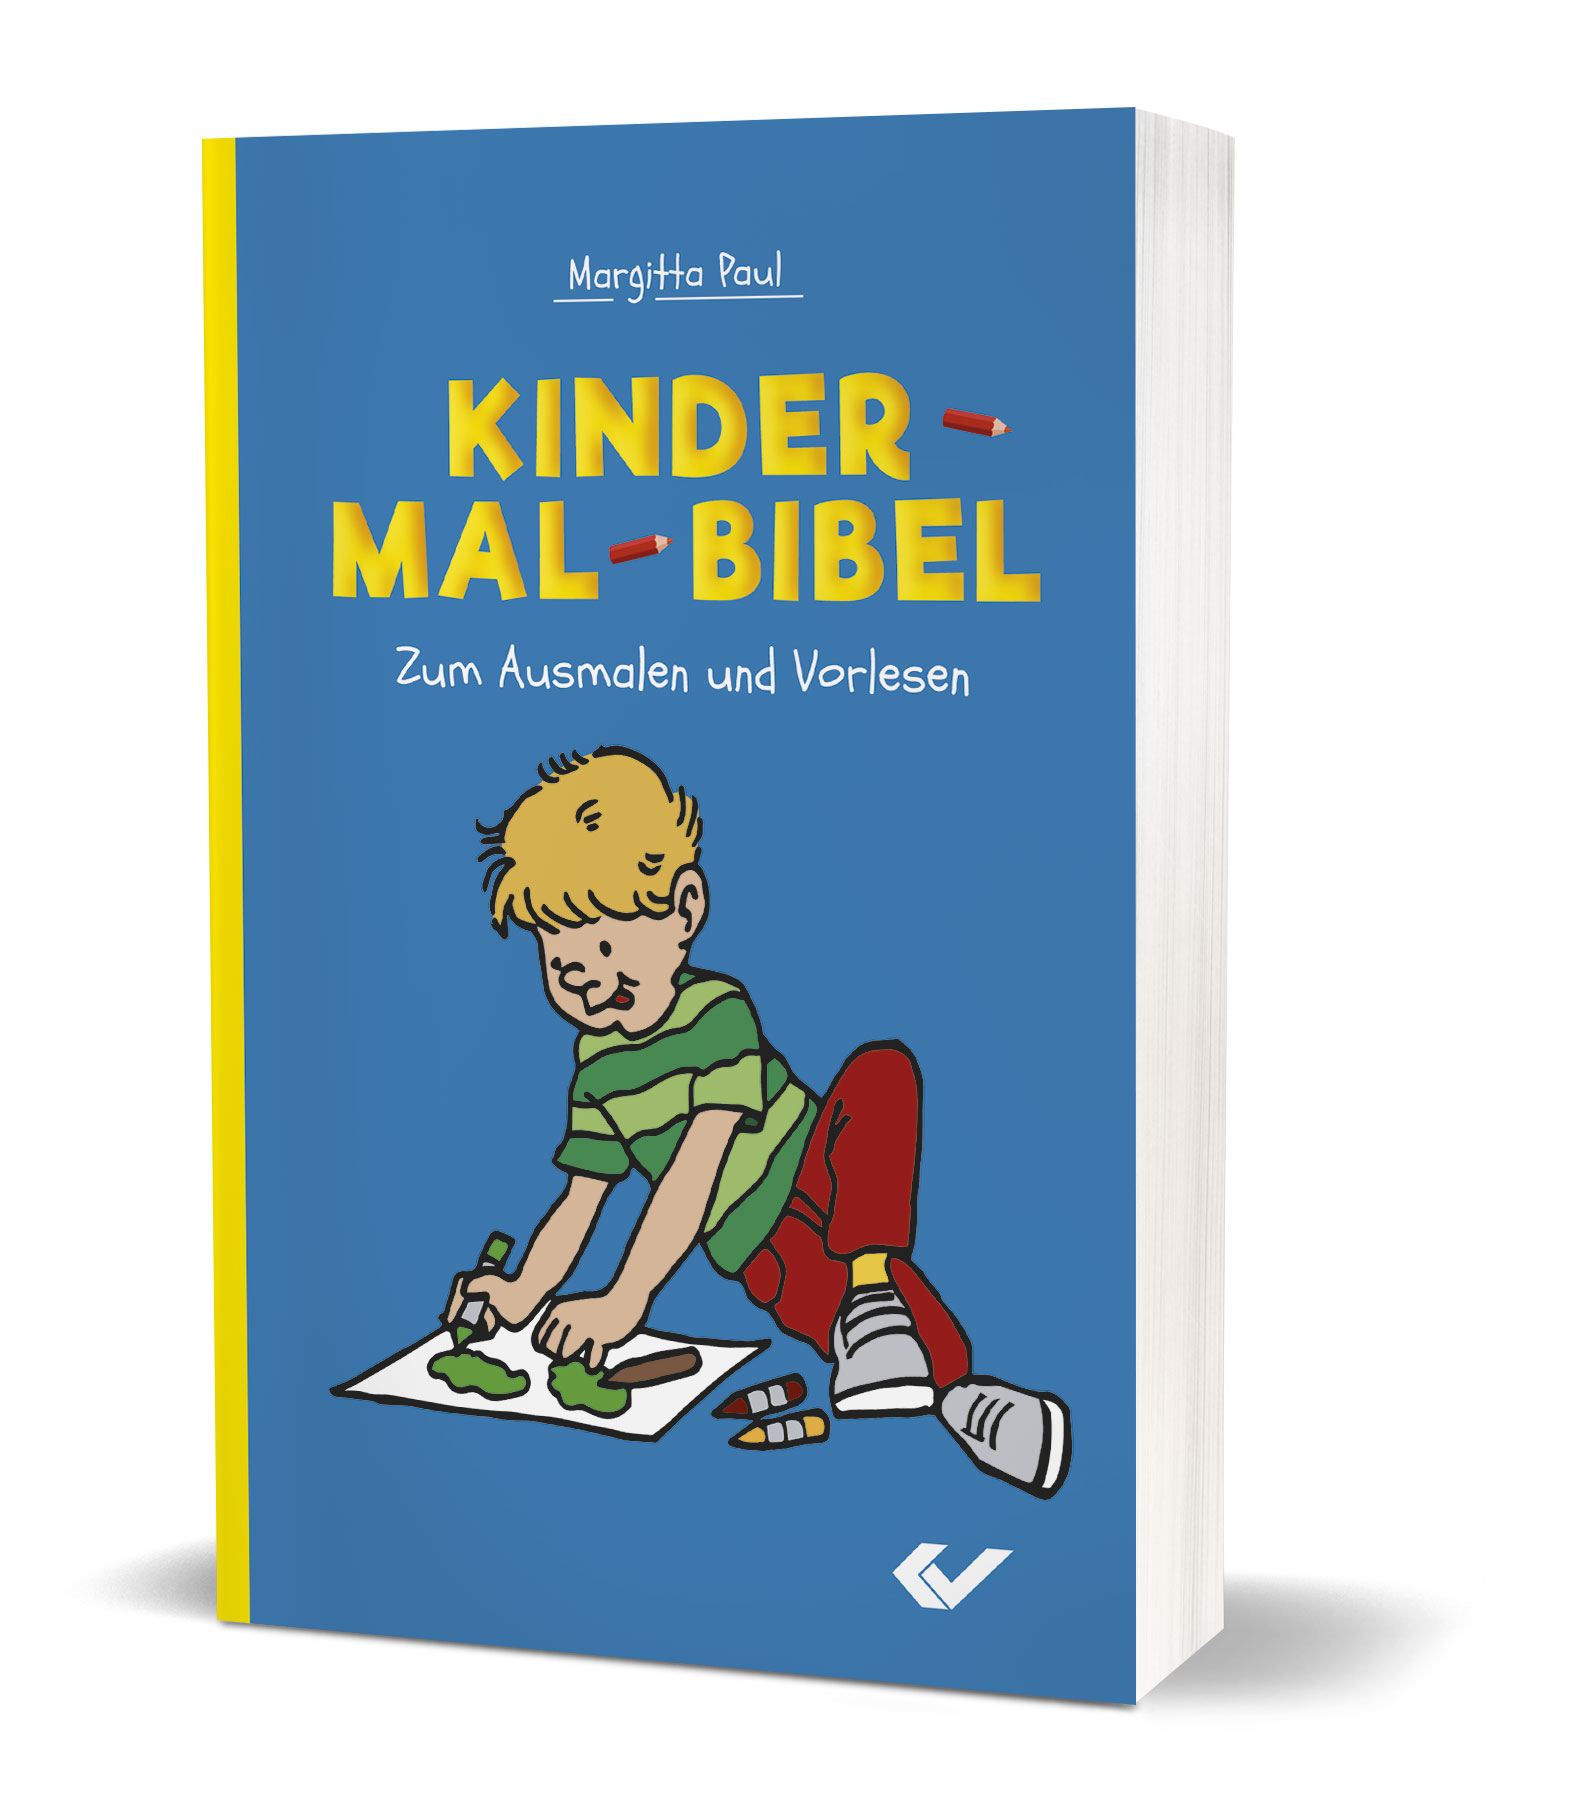 Margitta Paul: Kinder-Mal-Bibel (Deutsch) - Zum Ausmalen und Vorlesen